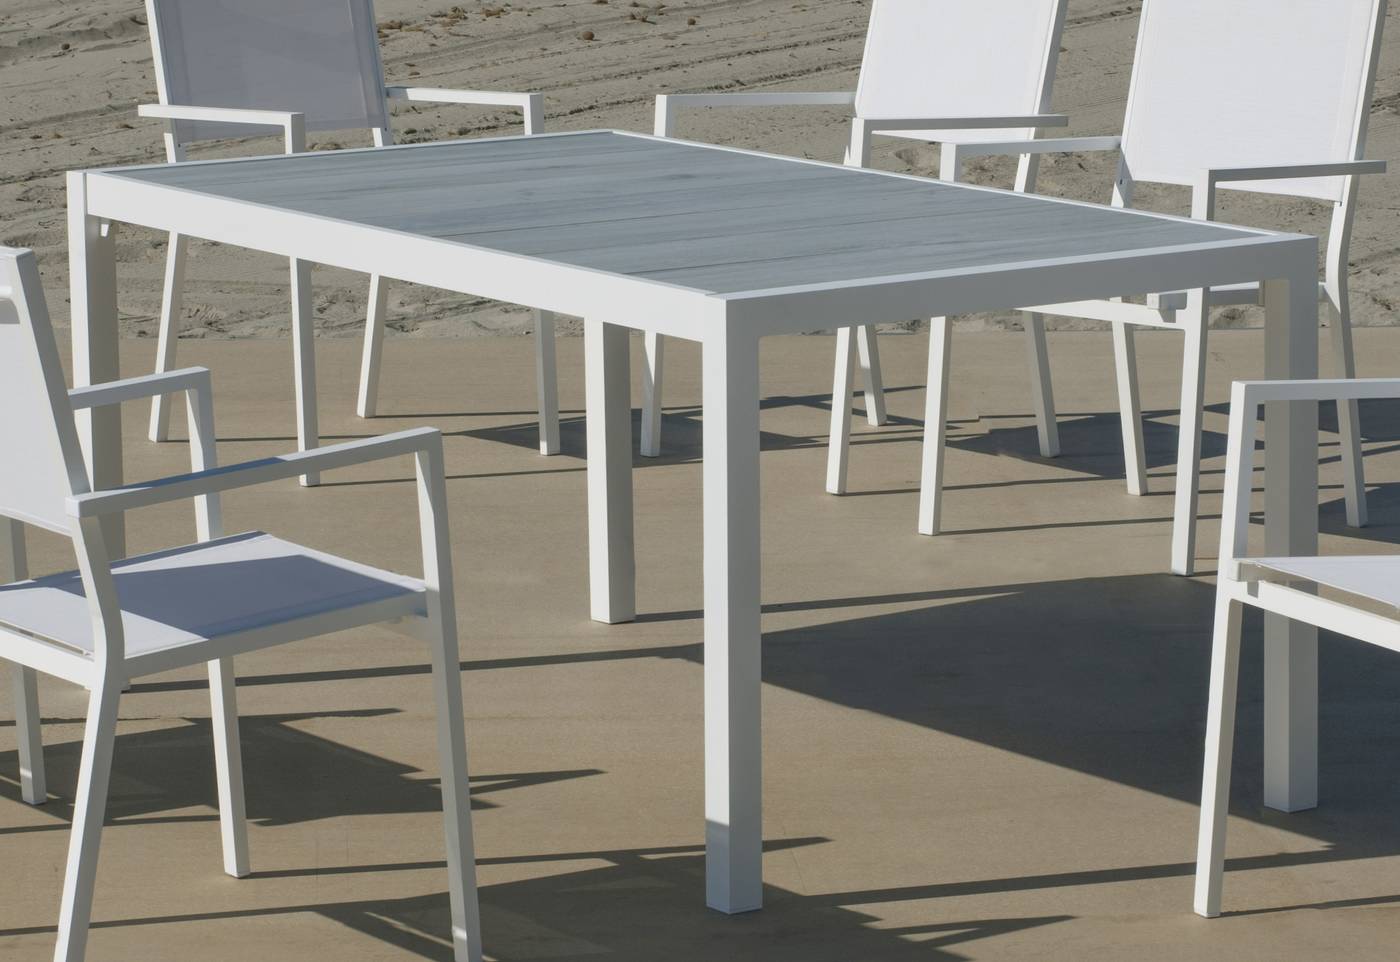 Set Palermo-160-6 Palma - Conjunto de aluminio para jardín: Mesa rectangular con tablero cerámico de 160 cm + 6 sillones. Colores: blanco o antracita.